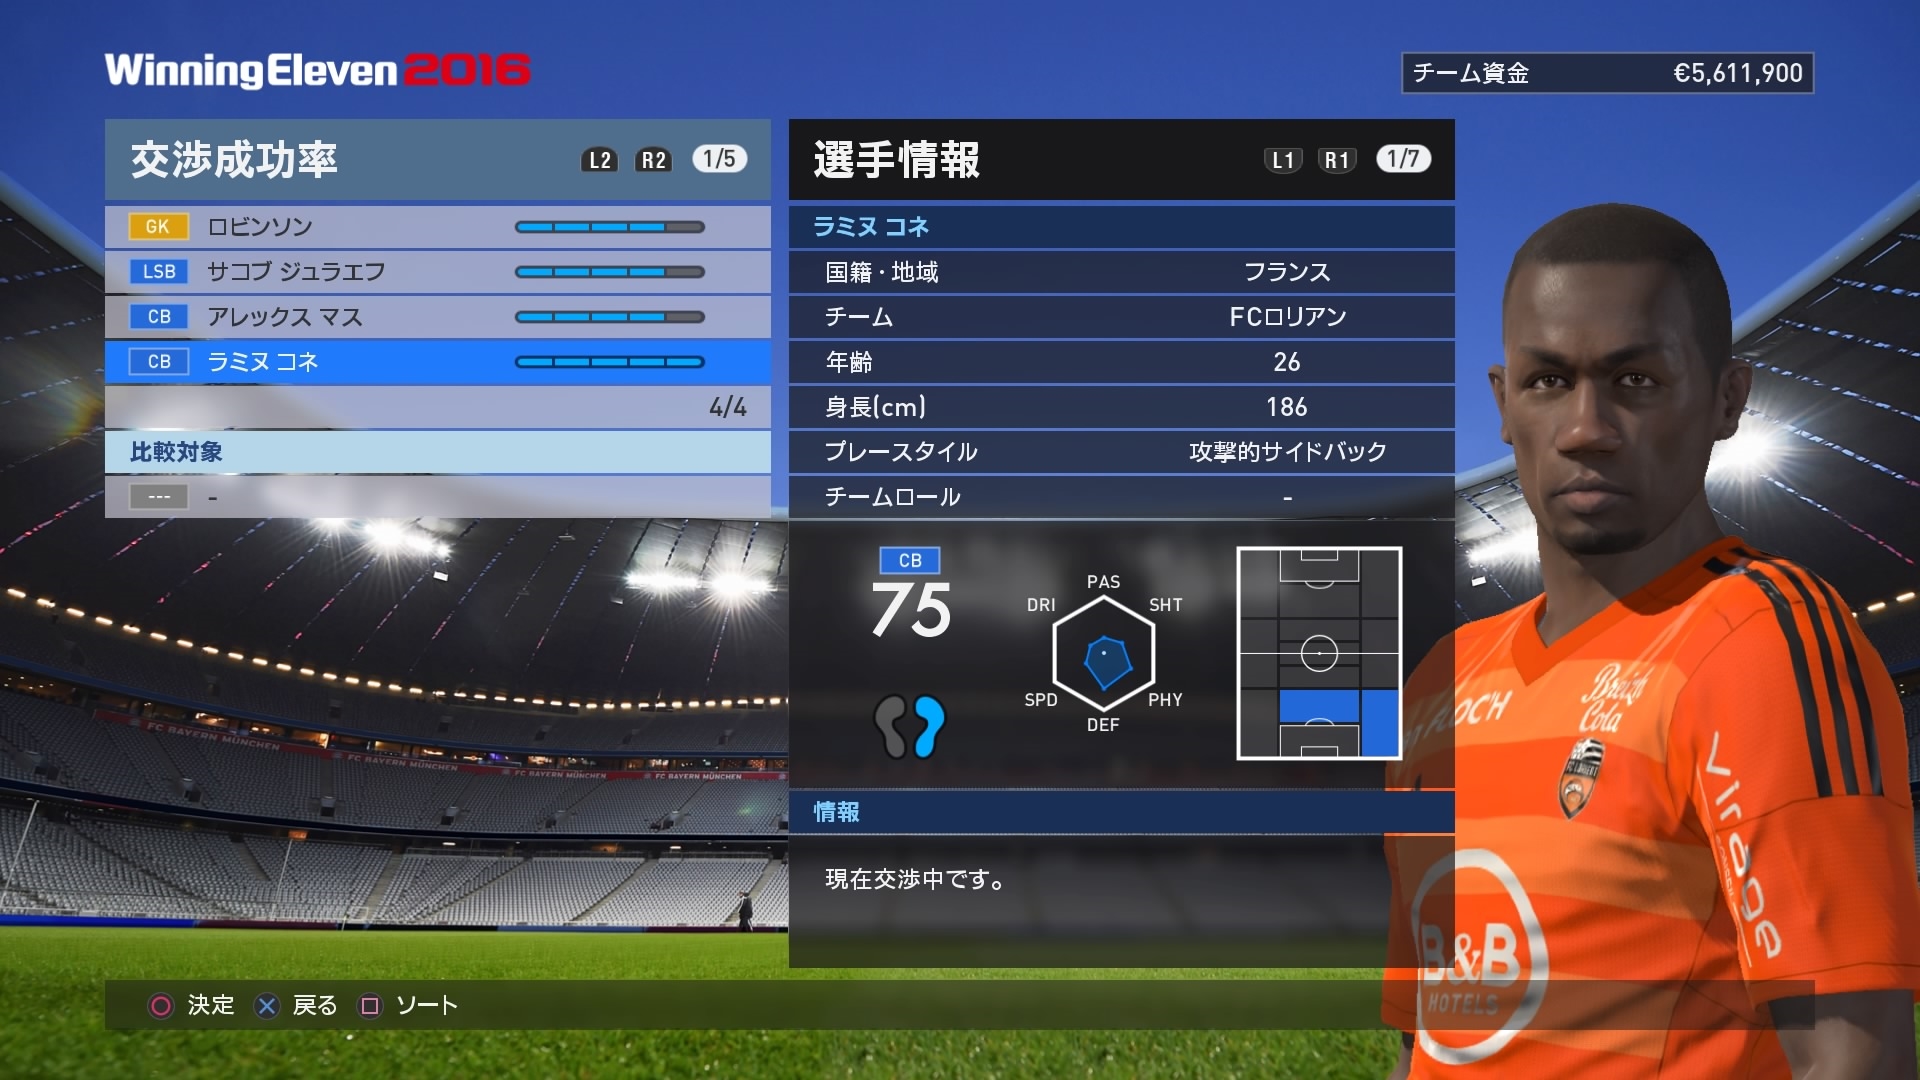 ウイニングイレブン 16 Pro Evolution Soccer 16 Japaneseclass Jp